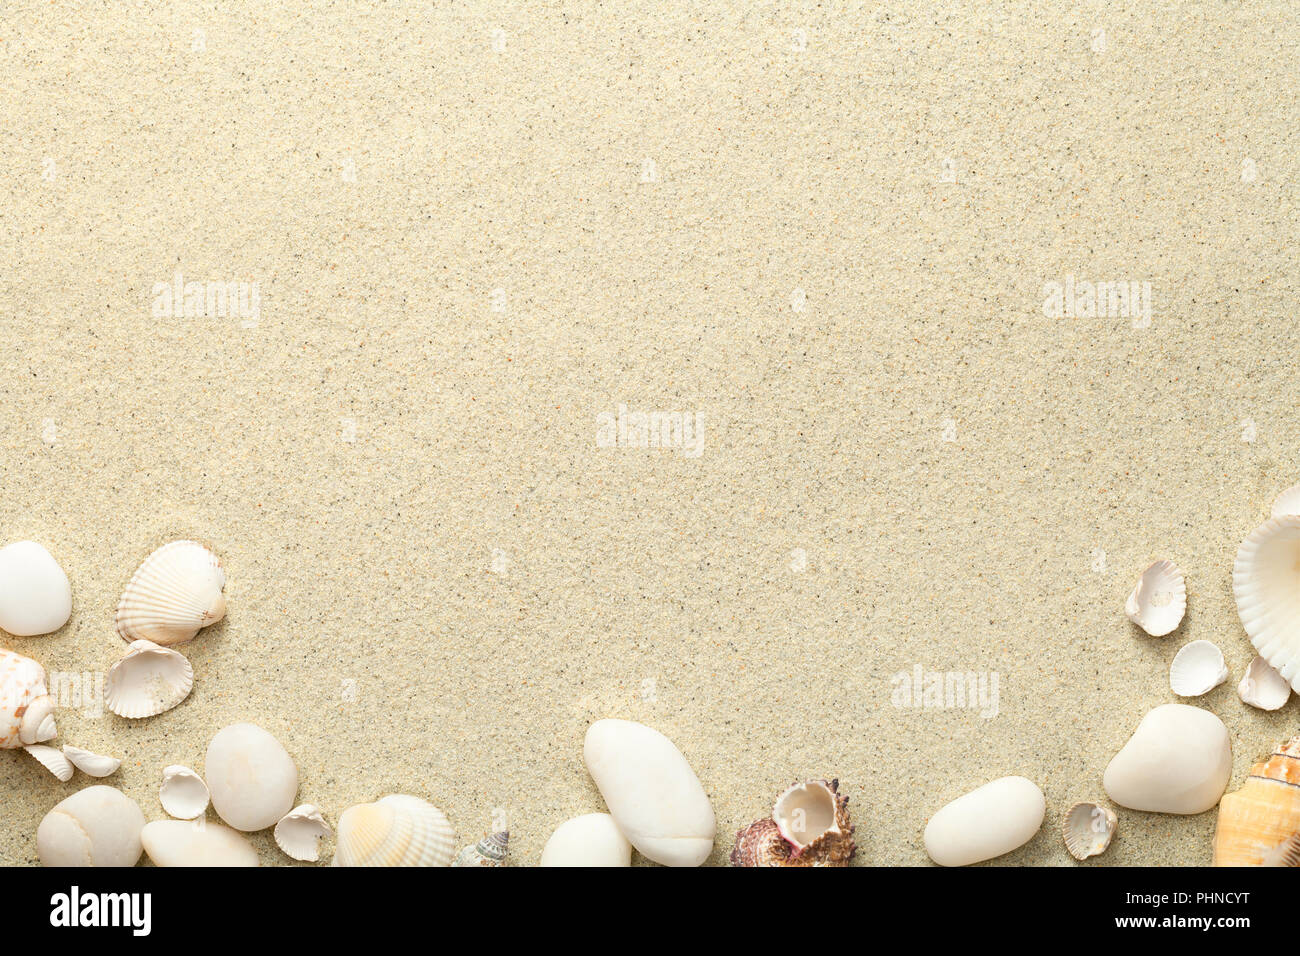 La playa de arena, con conchas y piedras de fondo Foto de stock